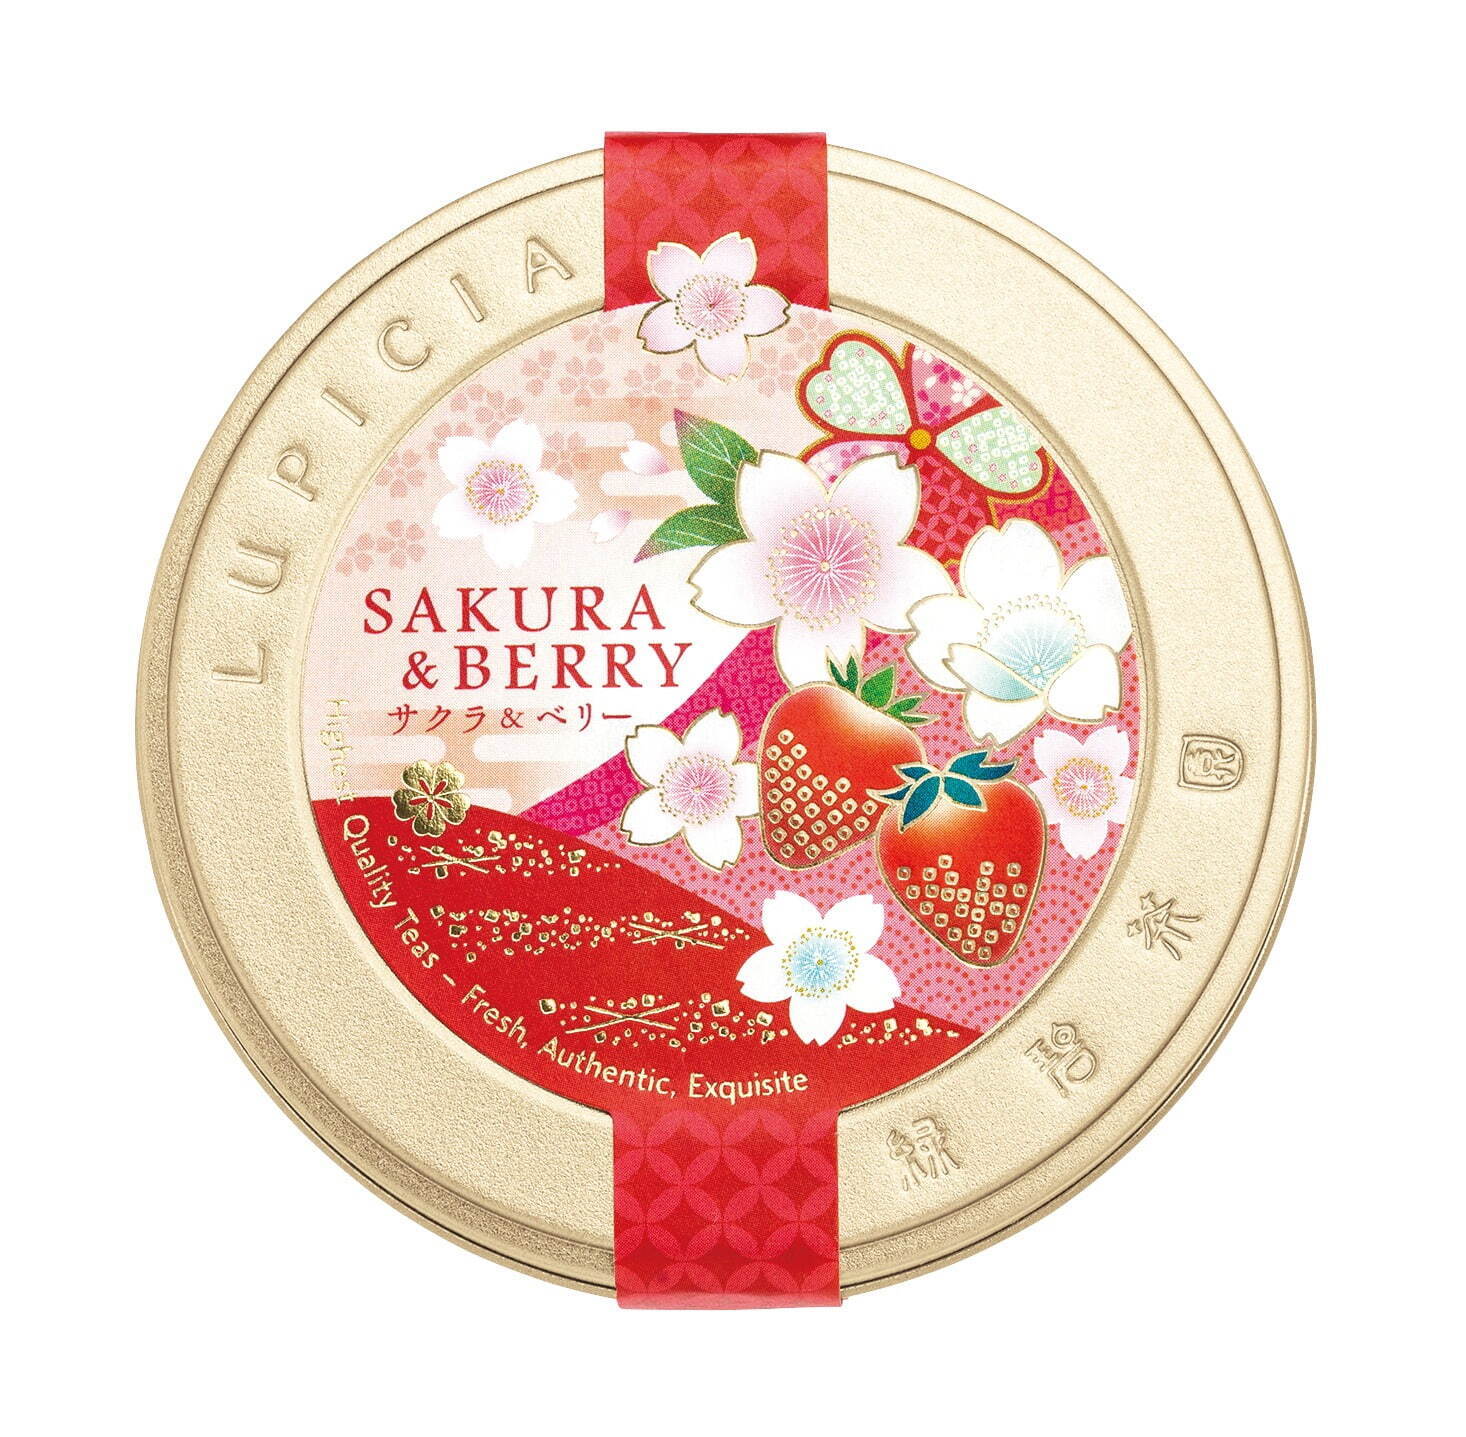 ルピシア「桜のお茶」に“花鳥風月”がテーマの紅茶缶、ほんのり塩味の桜餅や桜の葉×苺のフレーバー - ファッションプレス